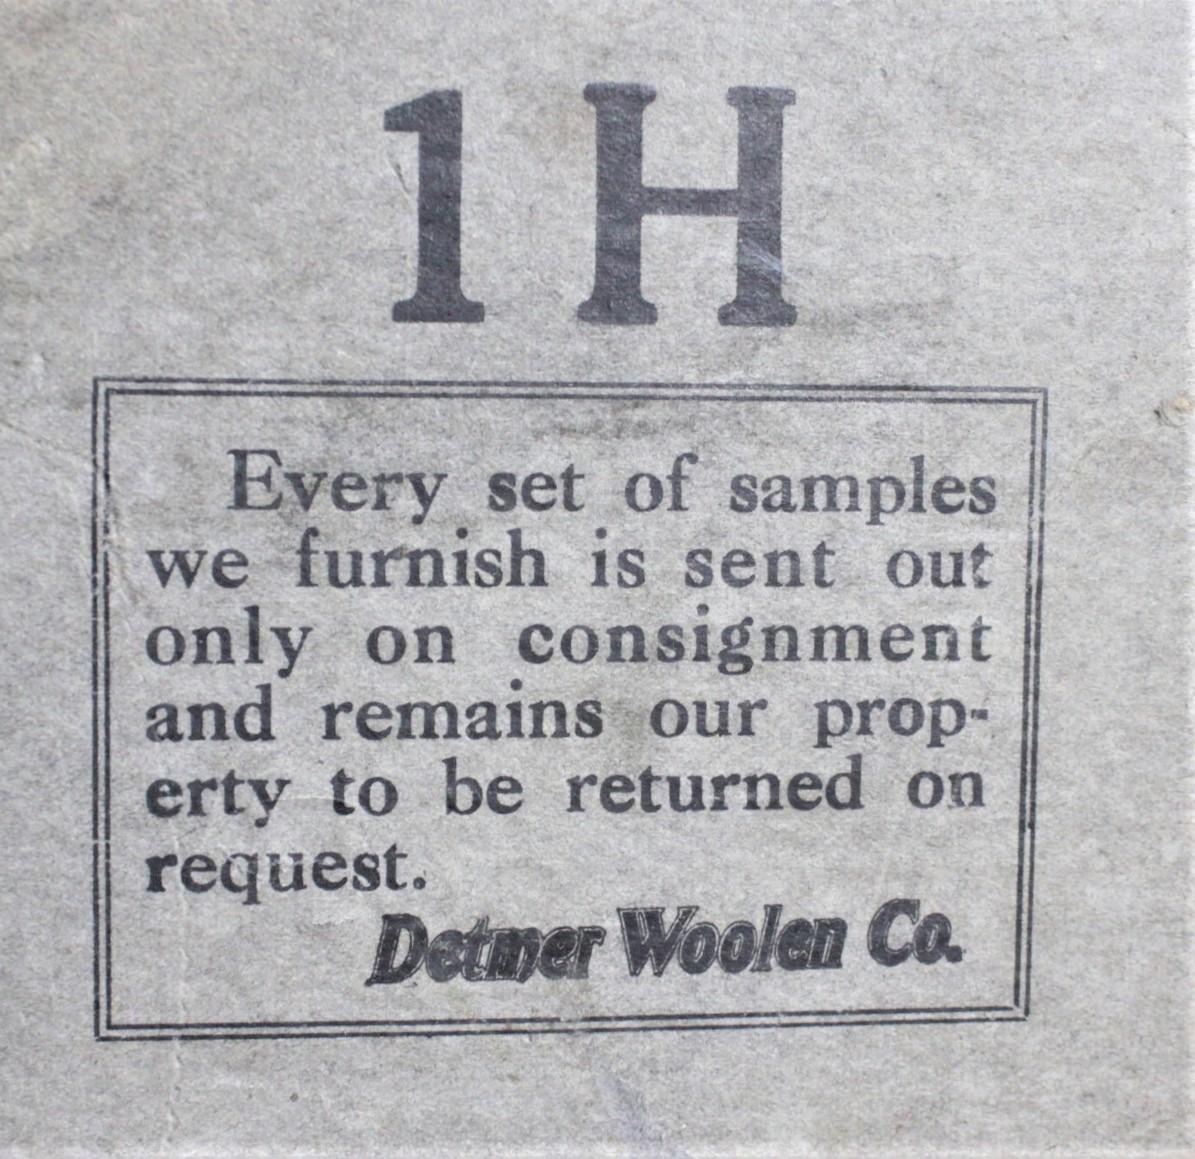 Vintage Detmer Woolens Advertising Store Display or Salesman's Sample Box For Sale 2